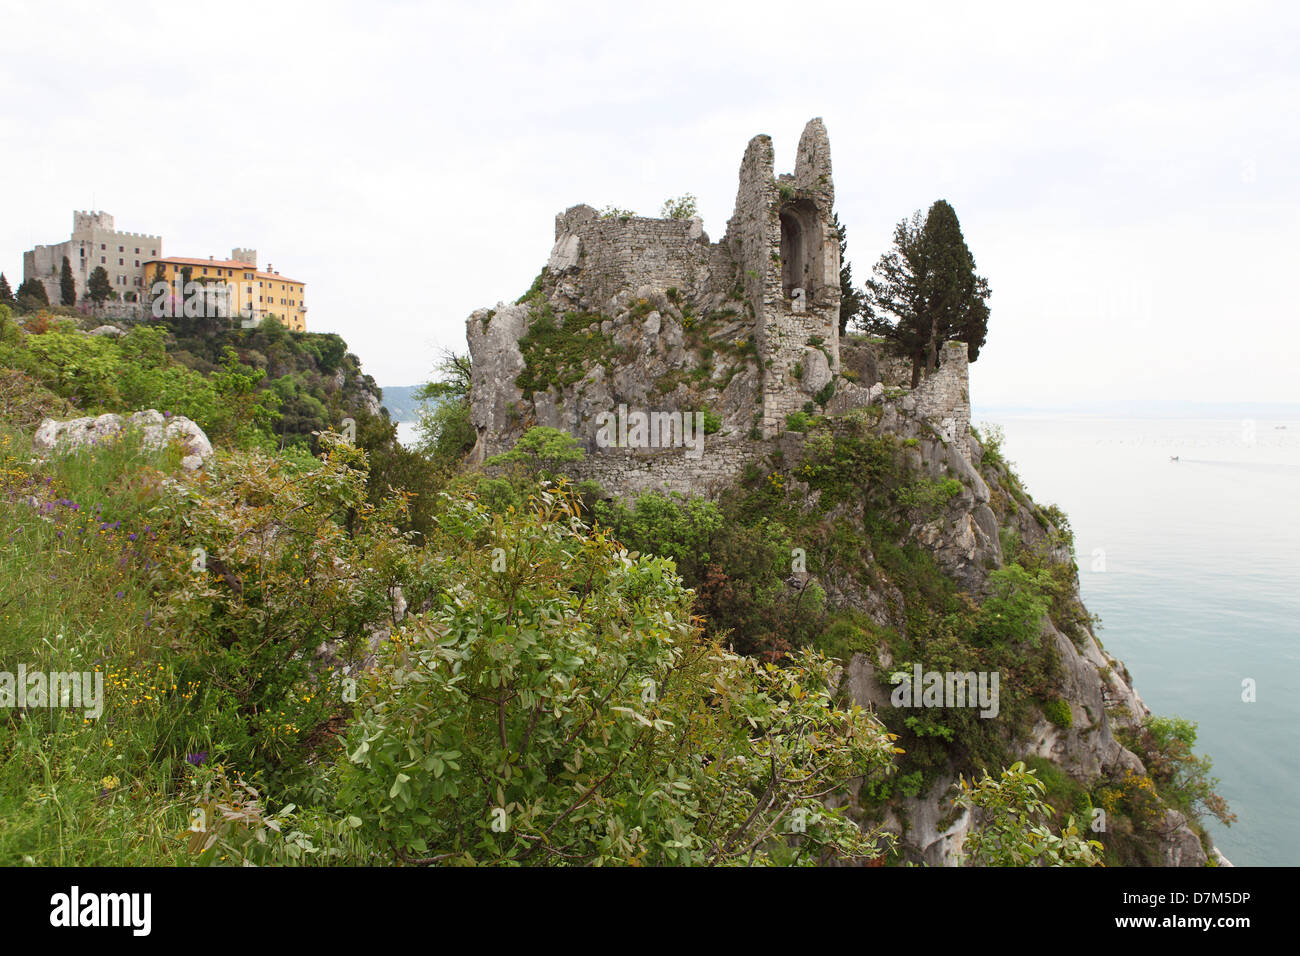 Il castello di Duino in Italia settentrionale. Foto Stock